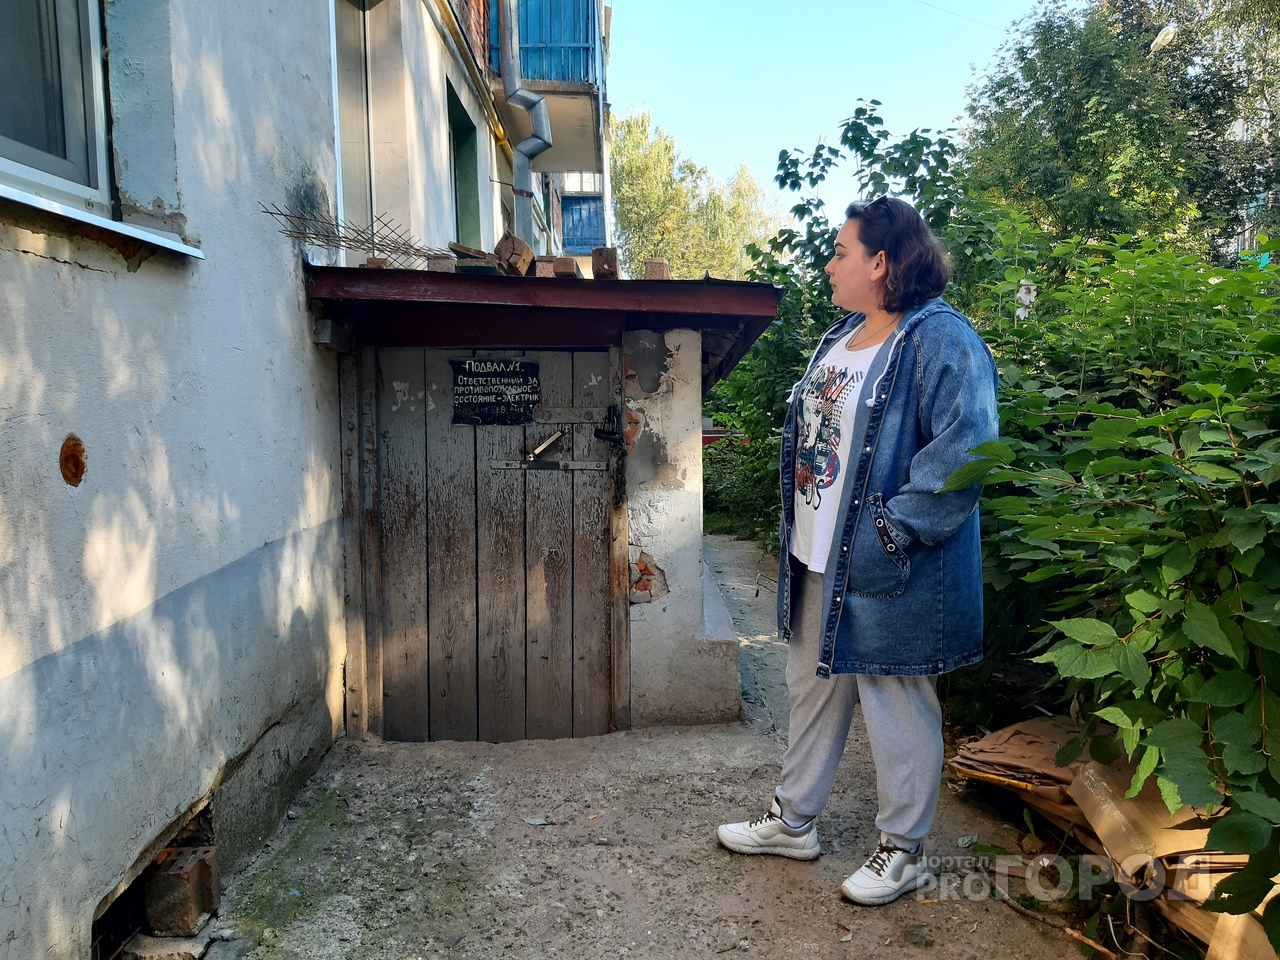 Дом в Чебоксарах заполнили блохи: "Вышли из подвала полностью облепленные насекомыми"